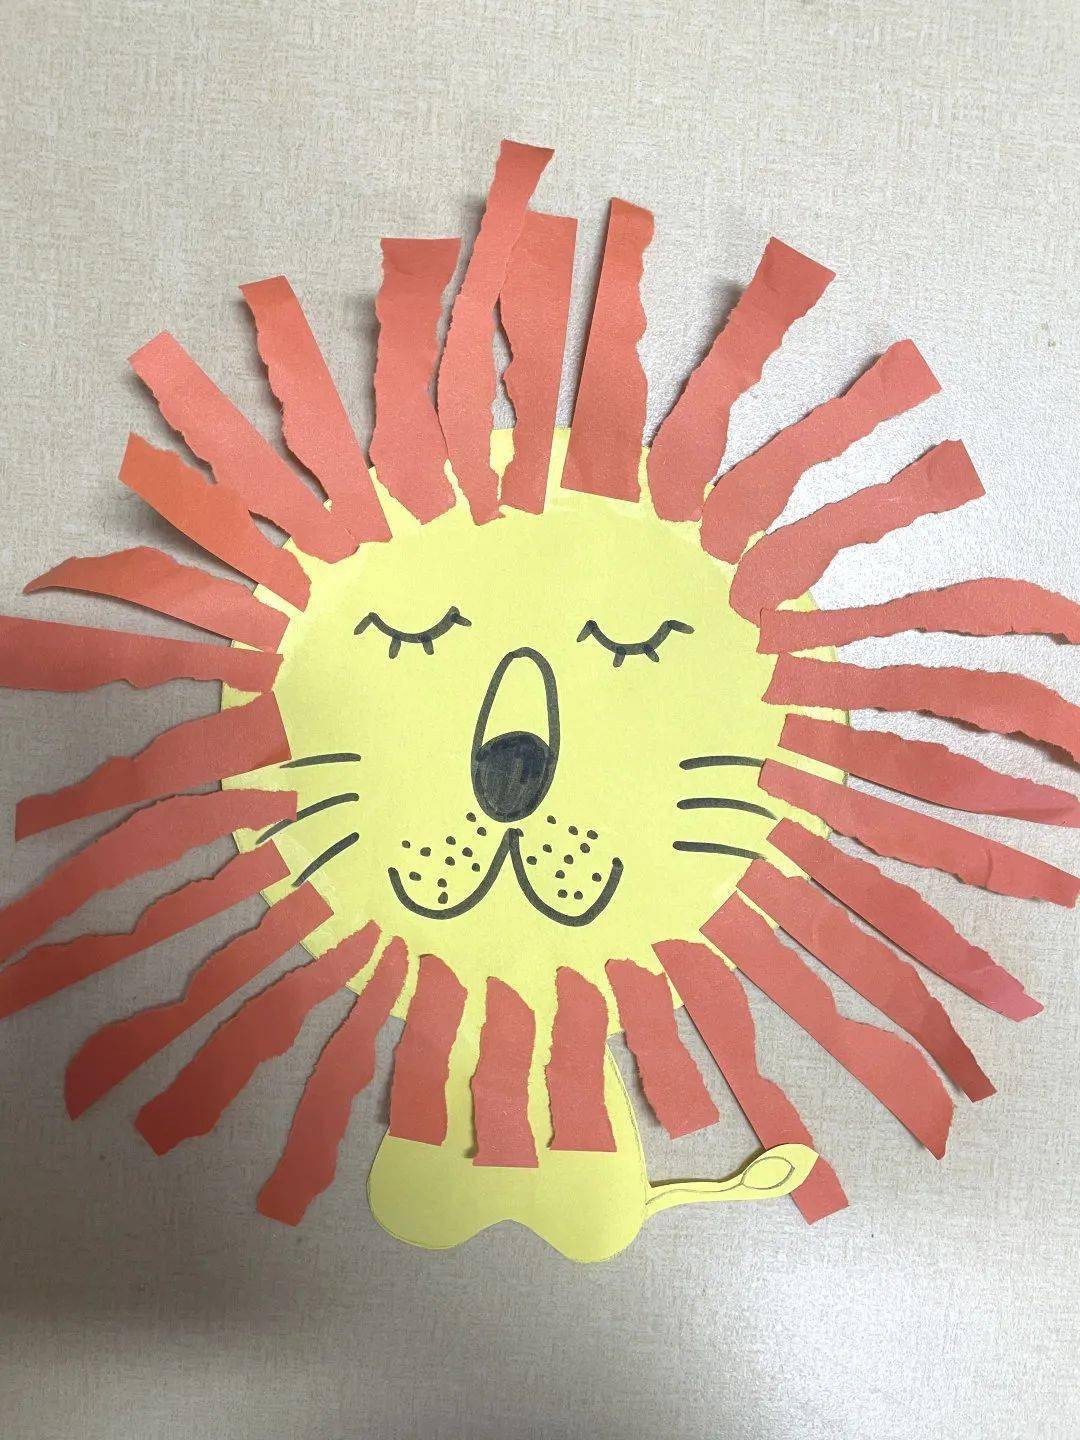 《大狮子的头发》 张贻琦 小六班逸翠园创意画 《冬天的大树》 费沫涵